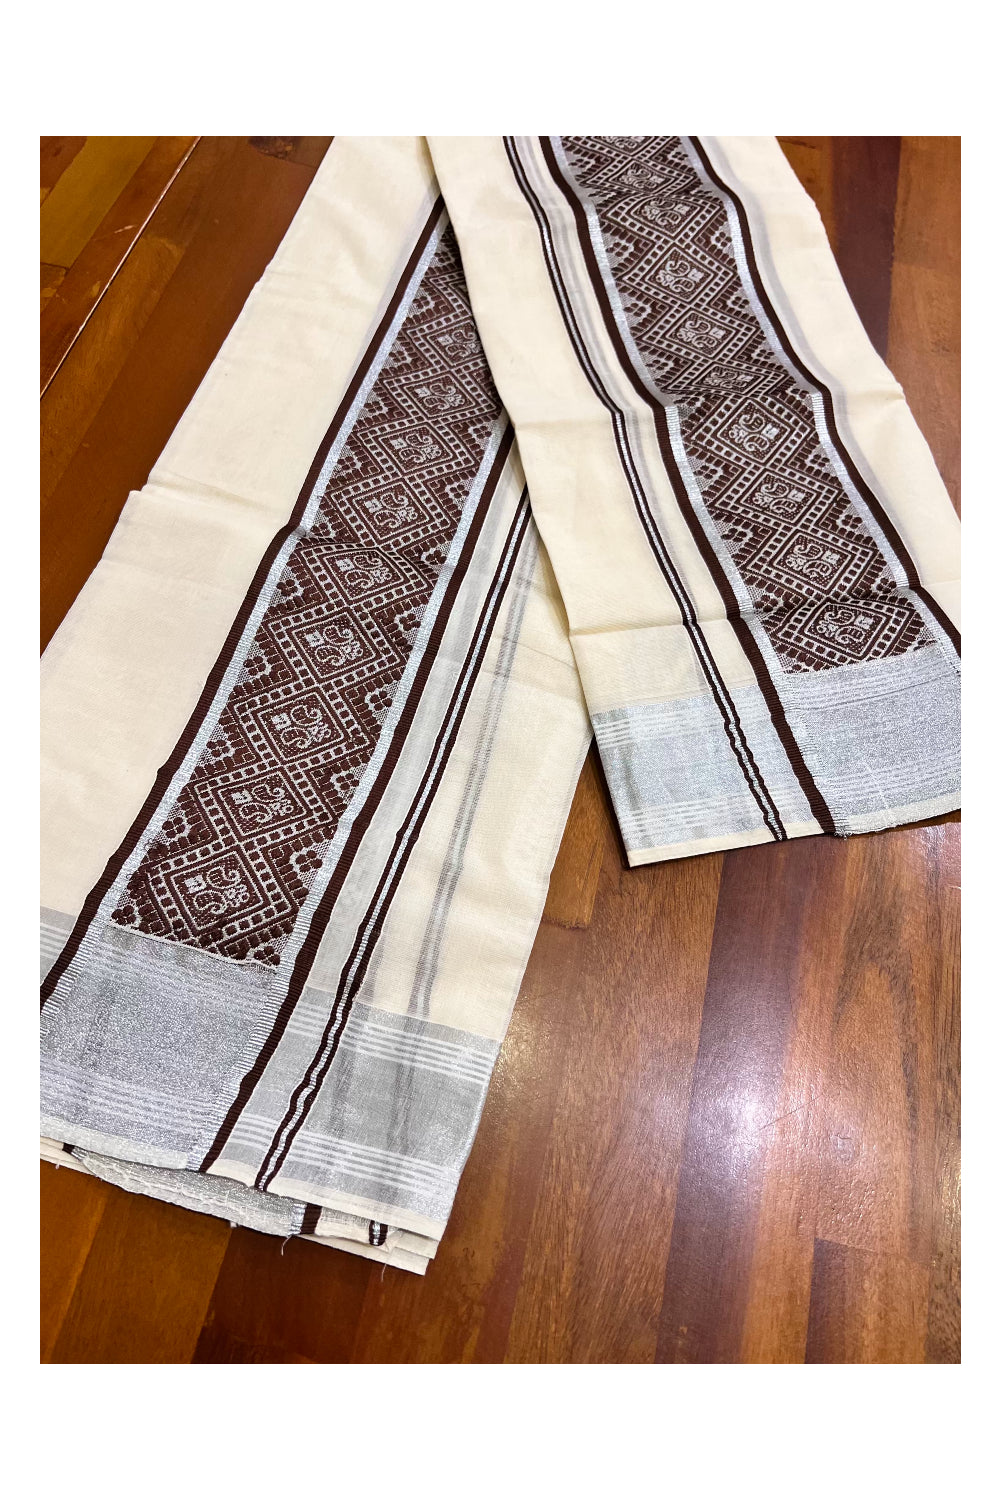 Kerala Cotton Mundum Neriyathum Single (Set Mundu) with Brown Woven Designs and Silver Kasavu Border 2.80 Mtrs